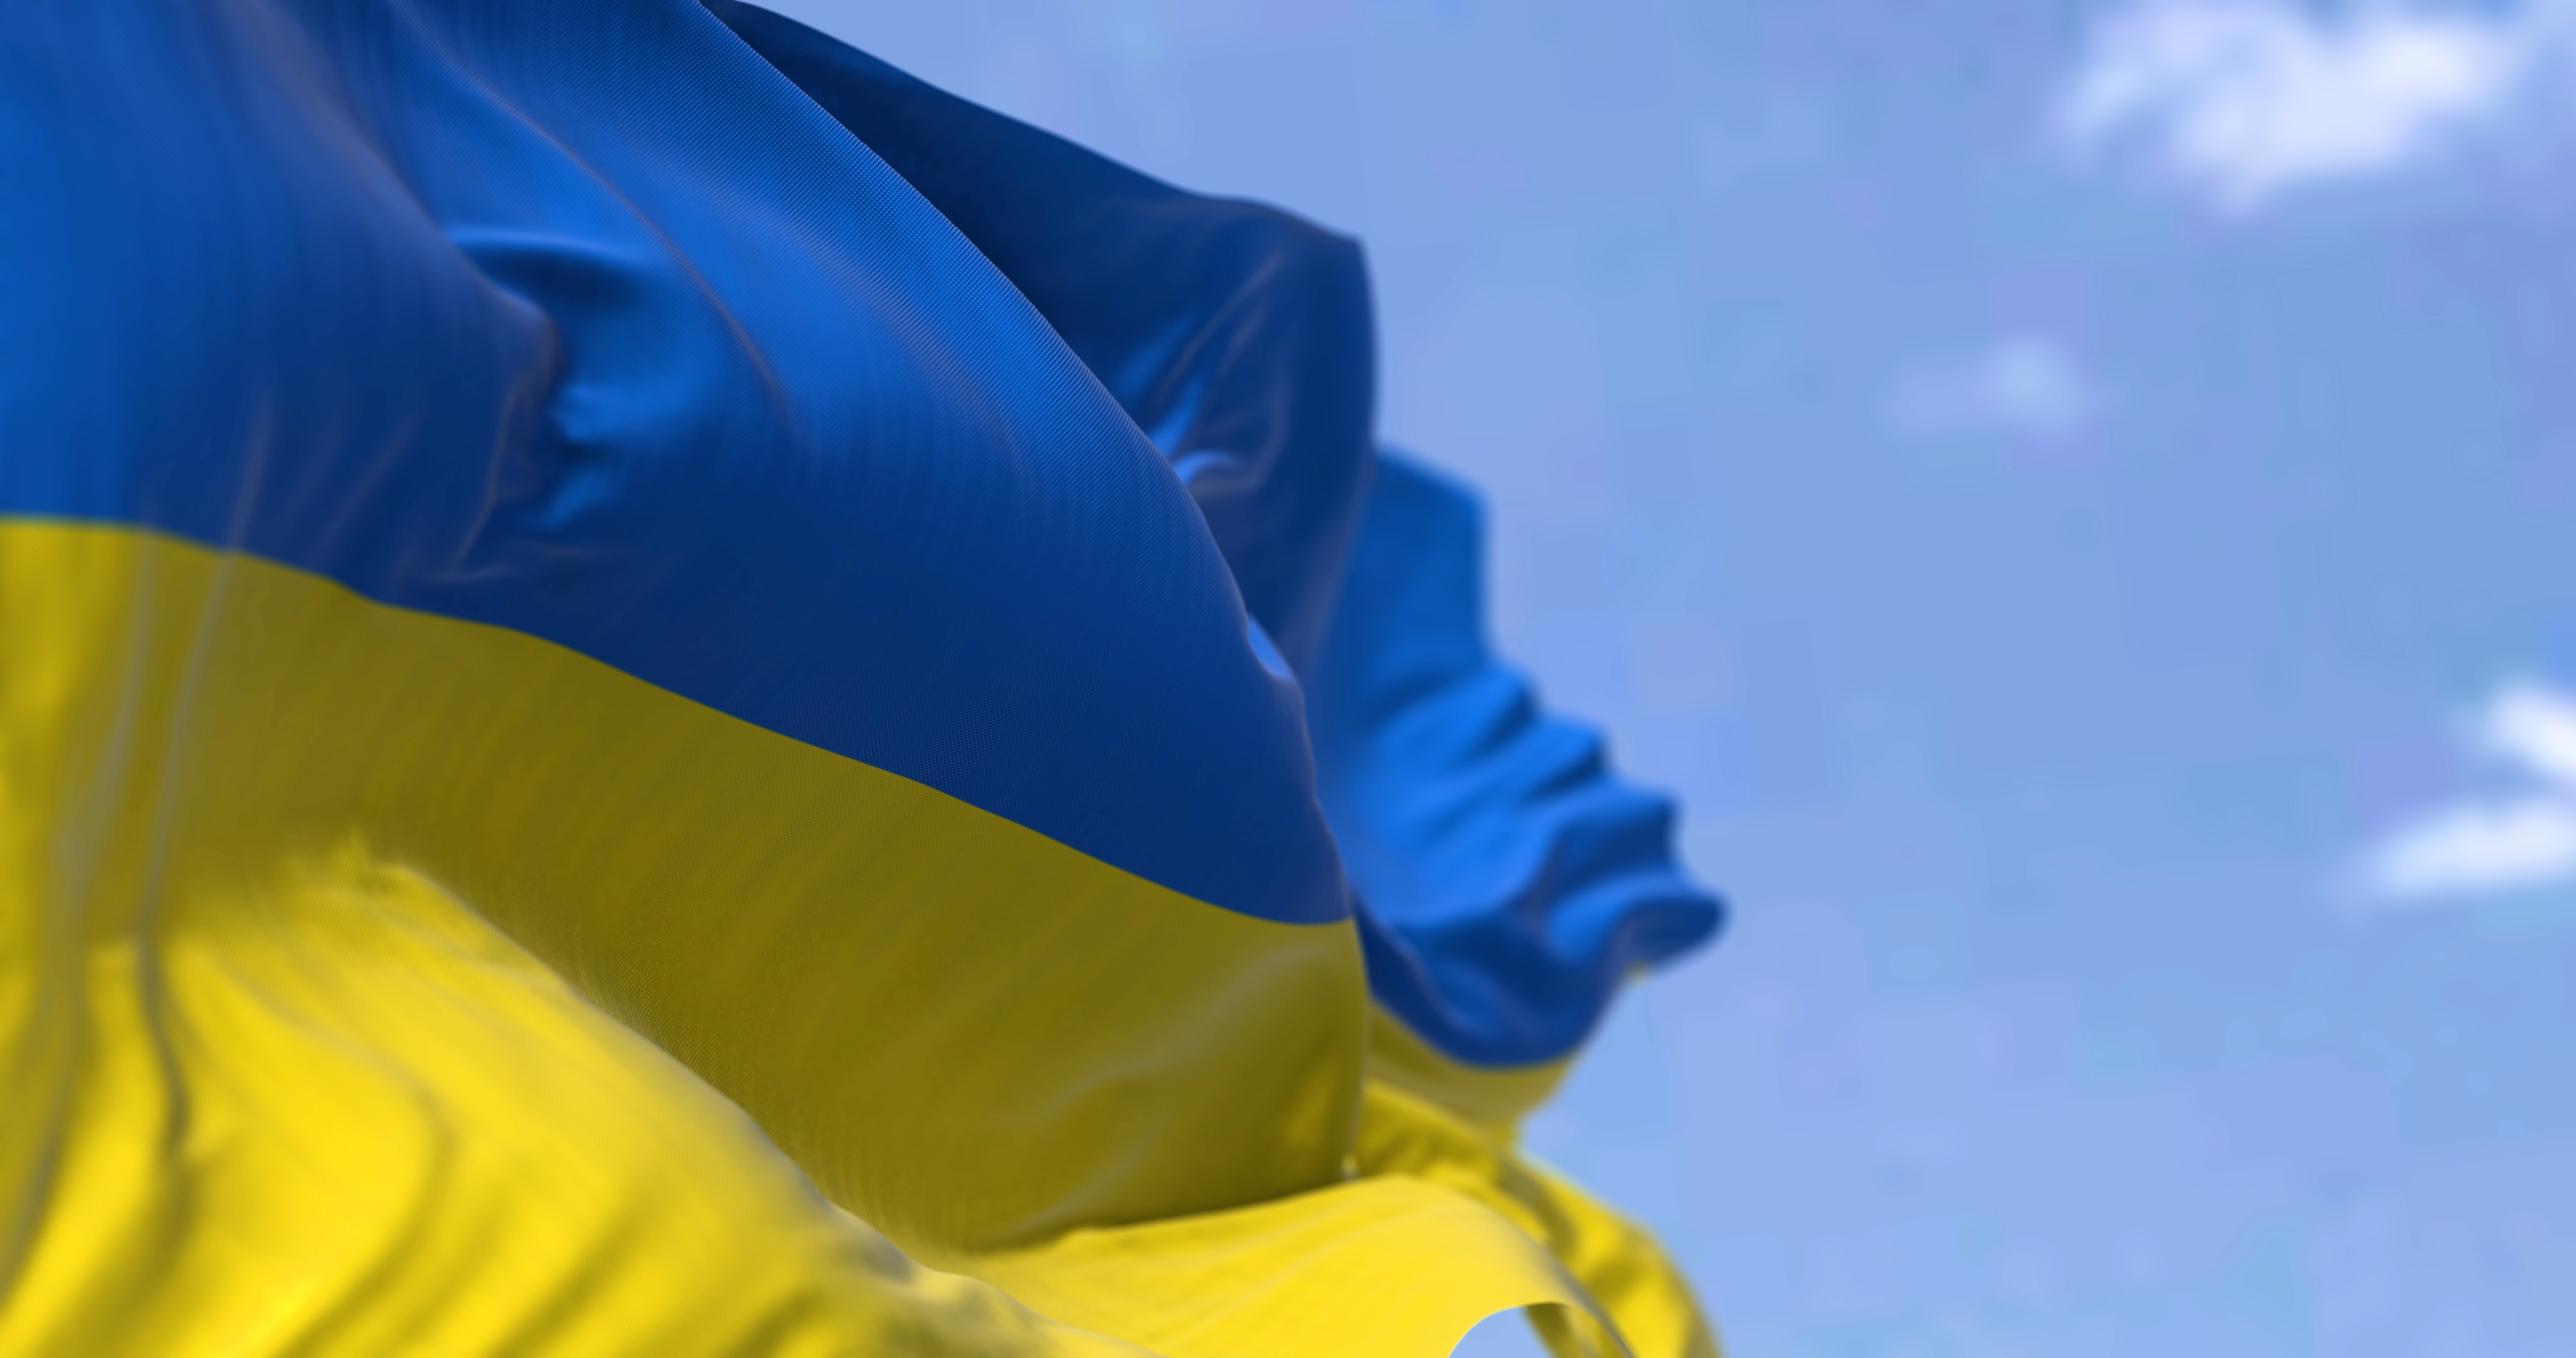 5 Leaders Appeal for EC Help Over Ukrainian Grain